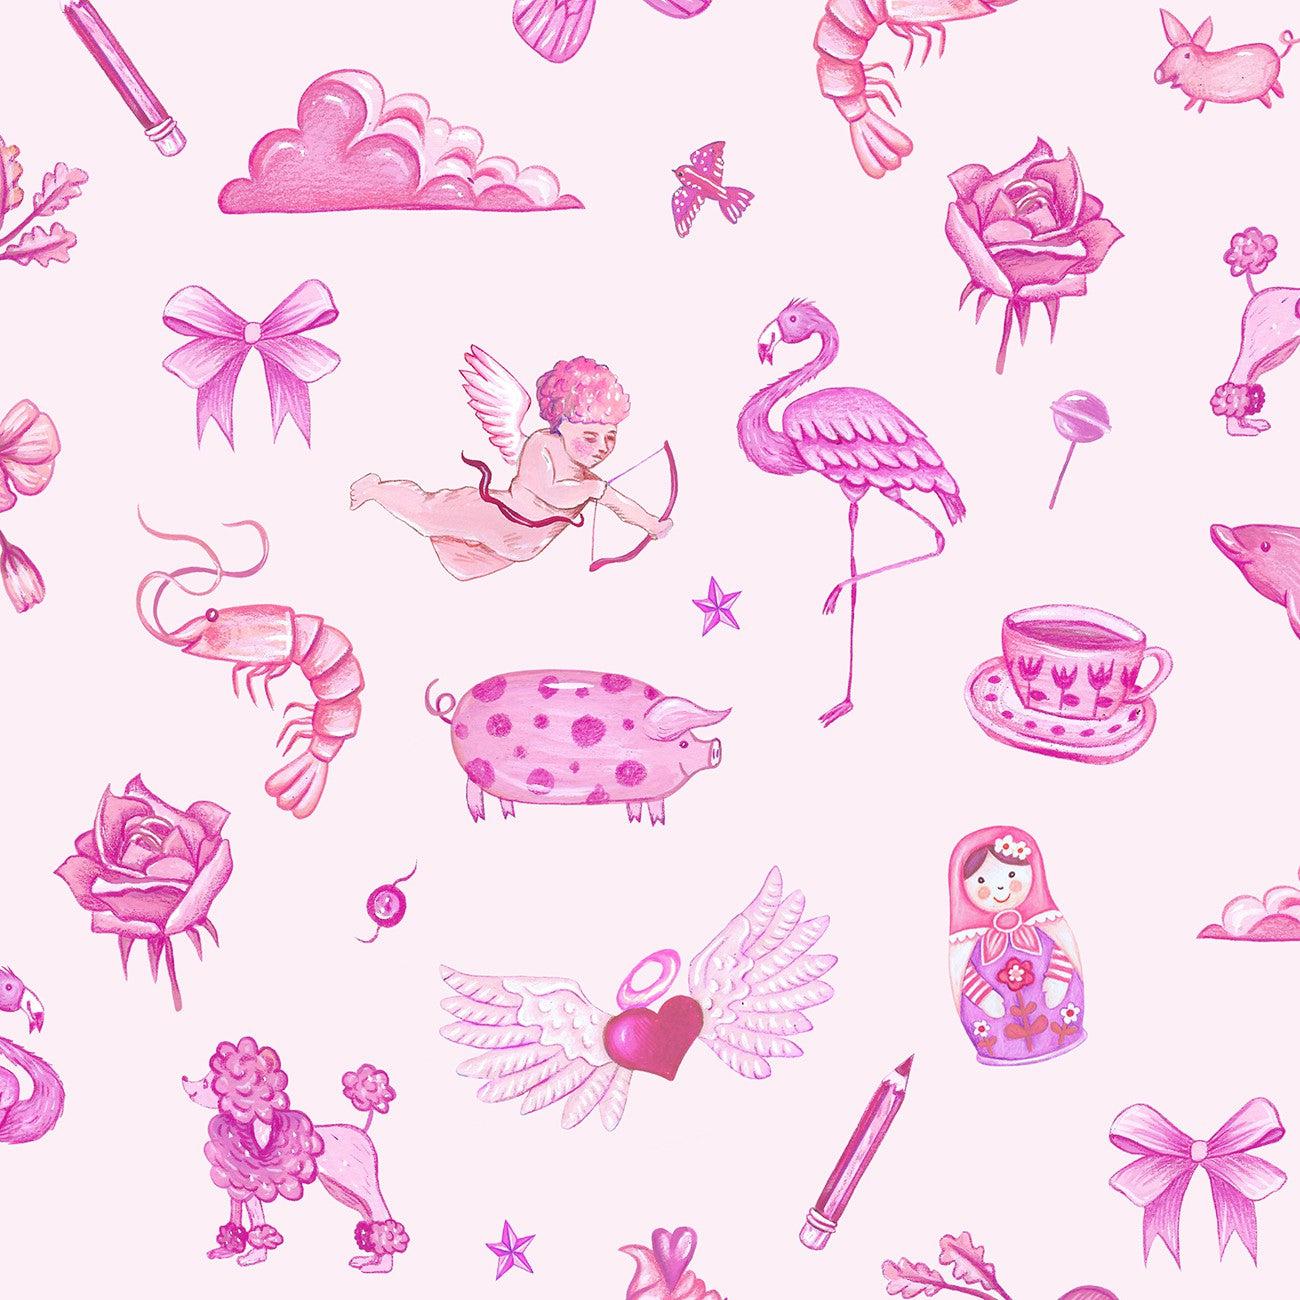 Jennie Pink Objects Digital Fabric